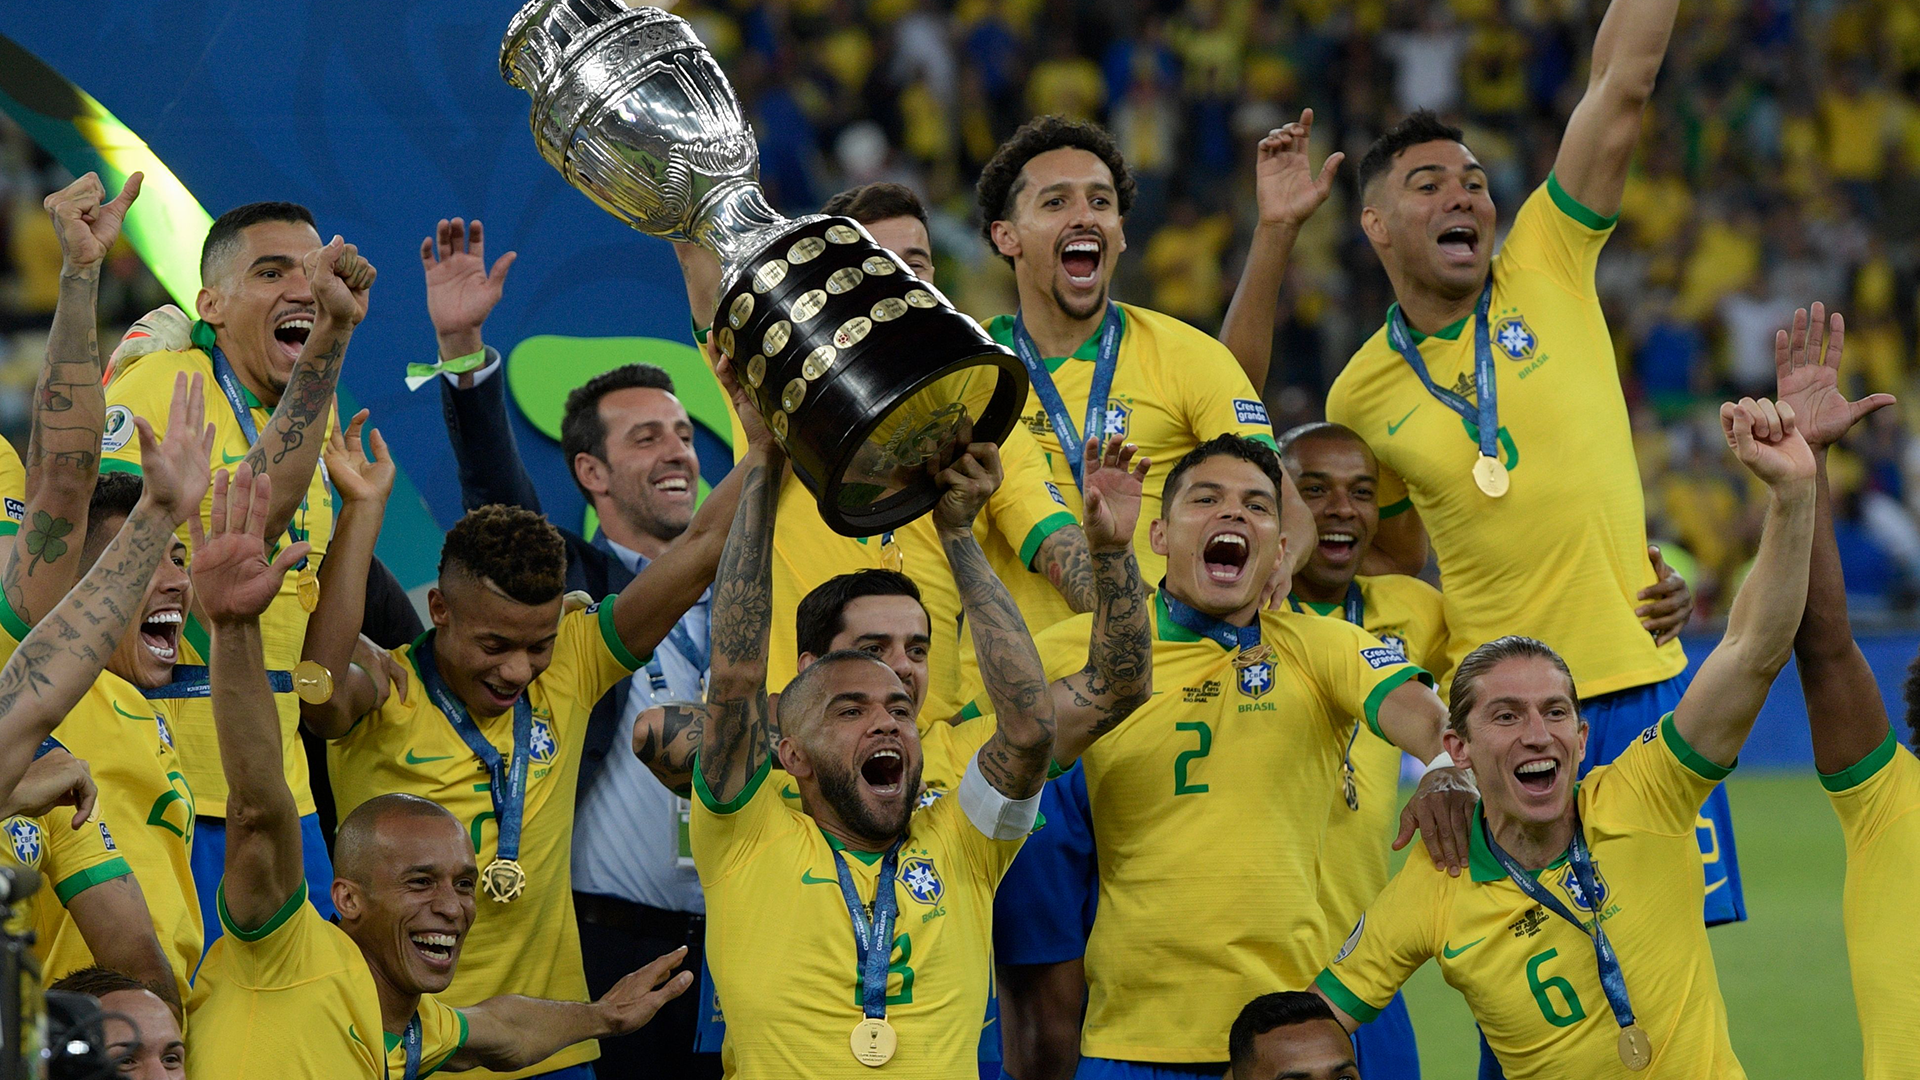 Copa América - #CopaAmérica 🏆 FIM DE JOGO! A Brasil ganhou